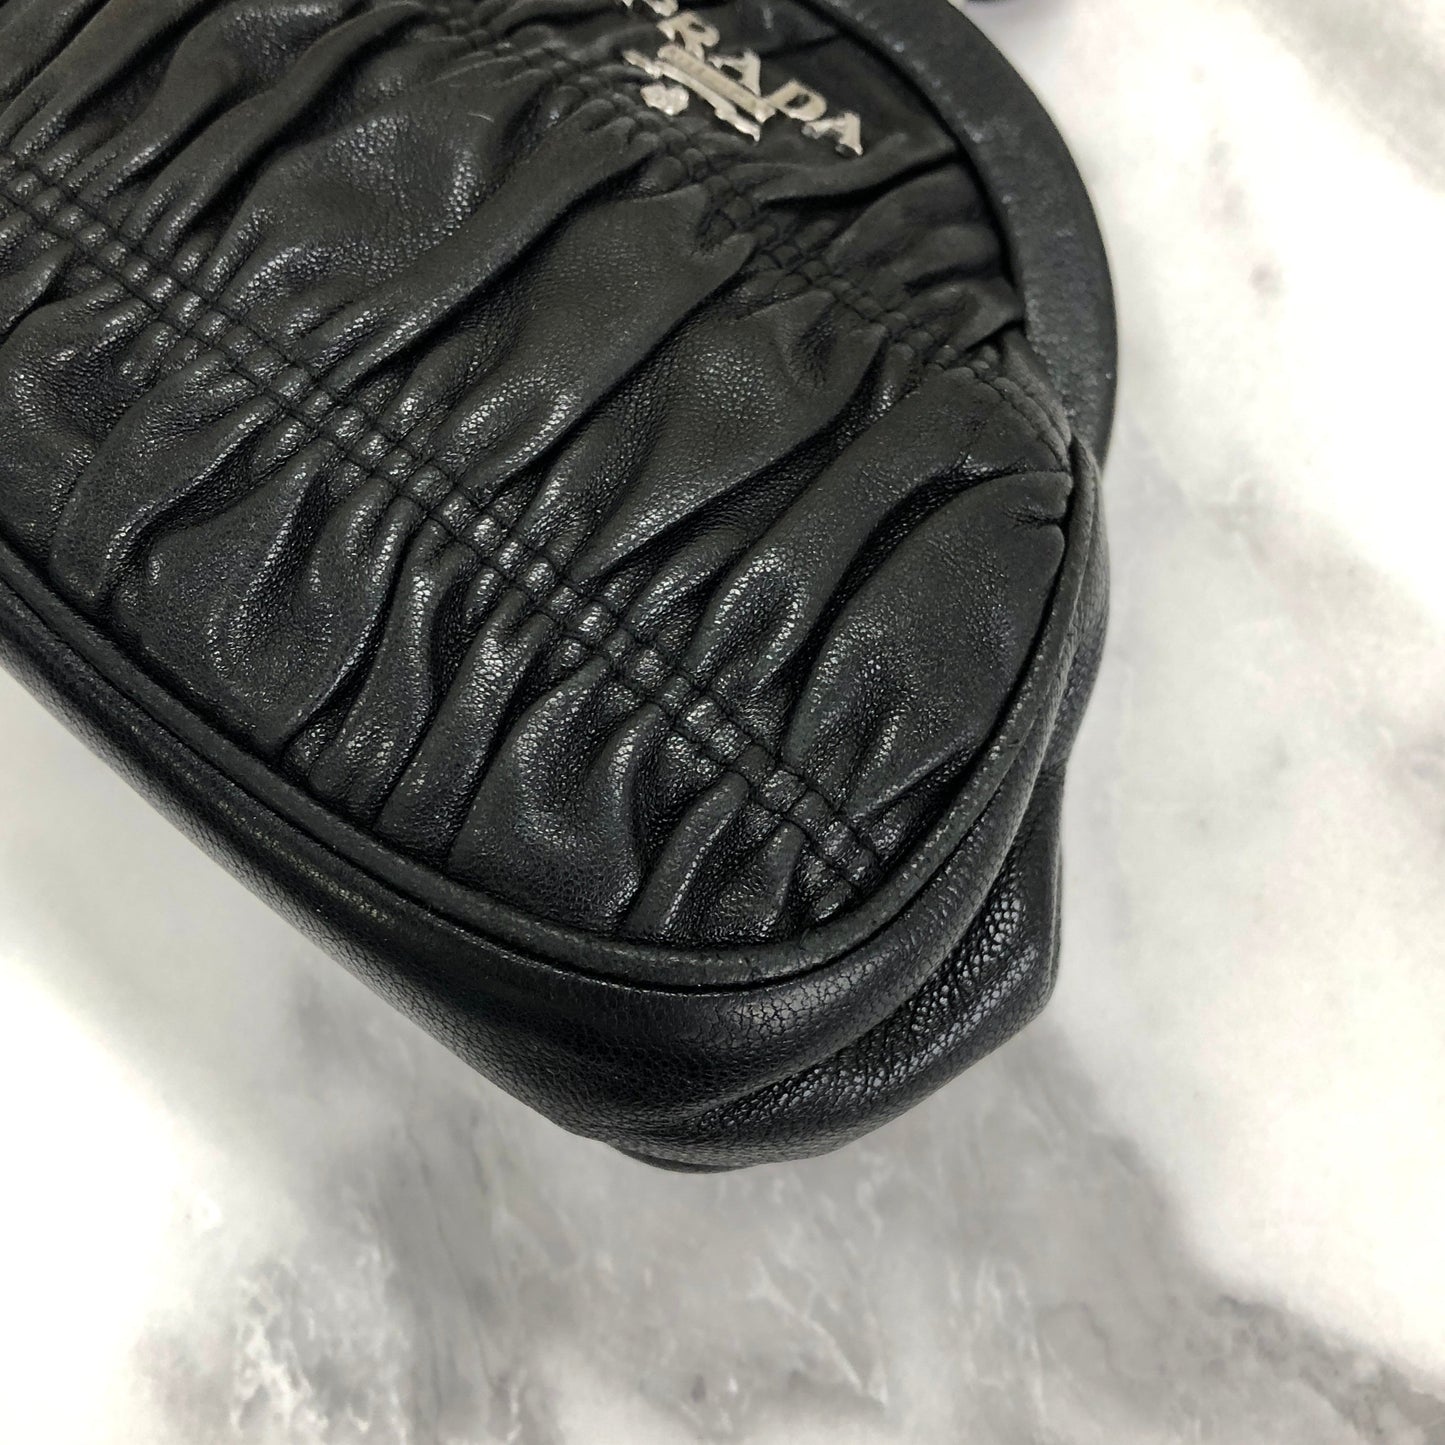 PRADA Clasp Coin purse stone gather leather black rbxcjb